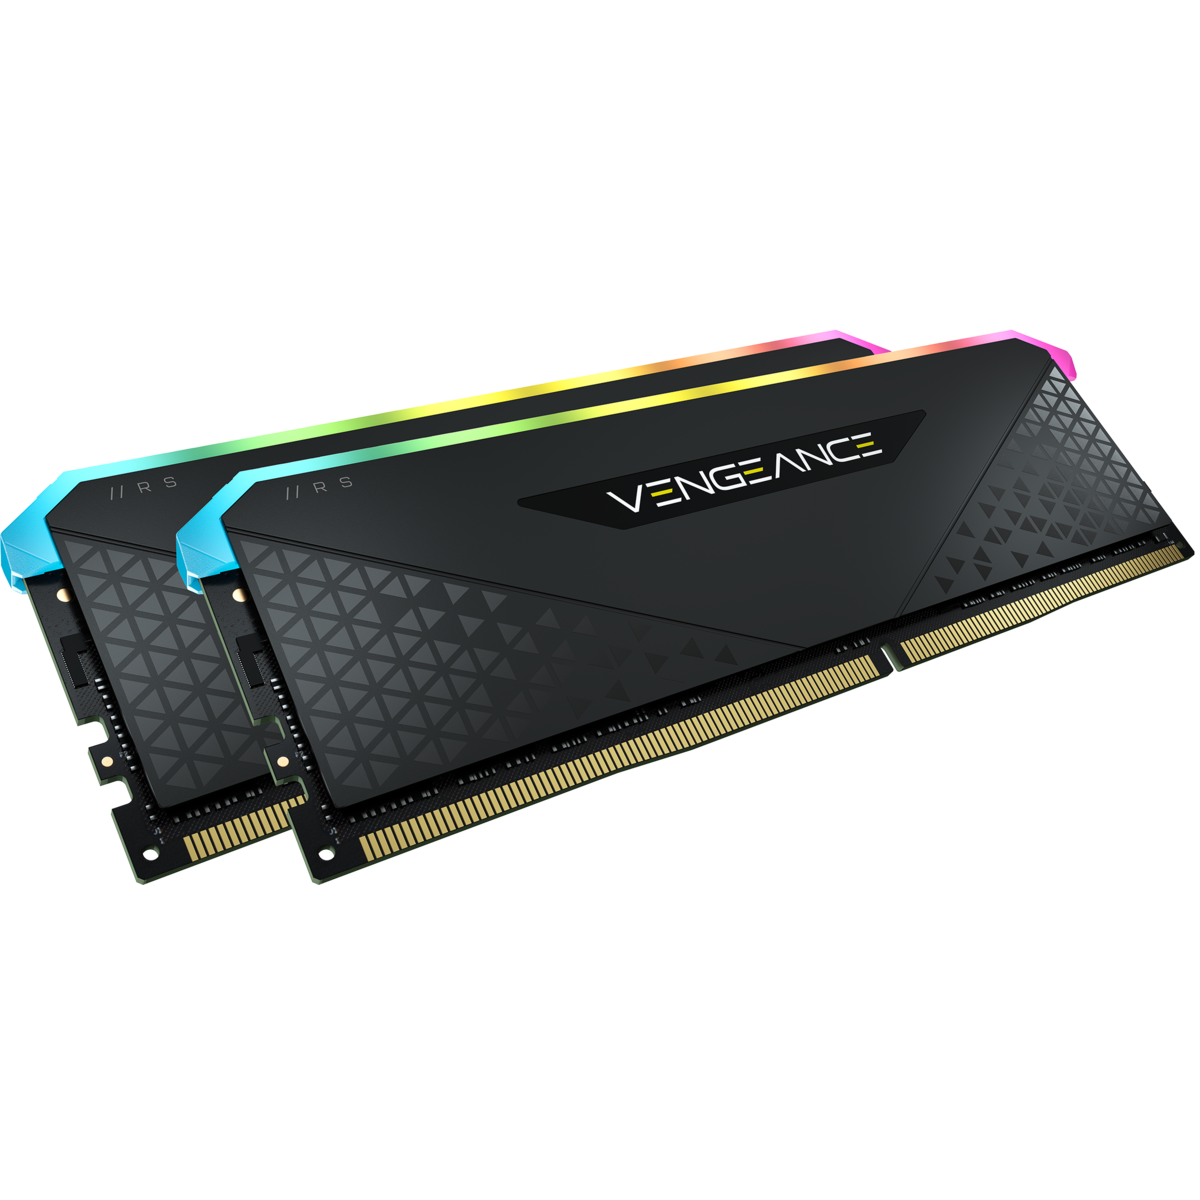 Corsair VENGEANCE RGB RS 64GB (32GB x2) DDR4 3200MHz